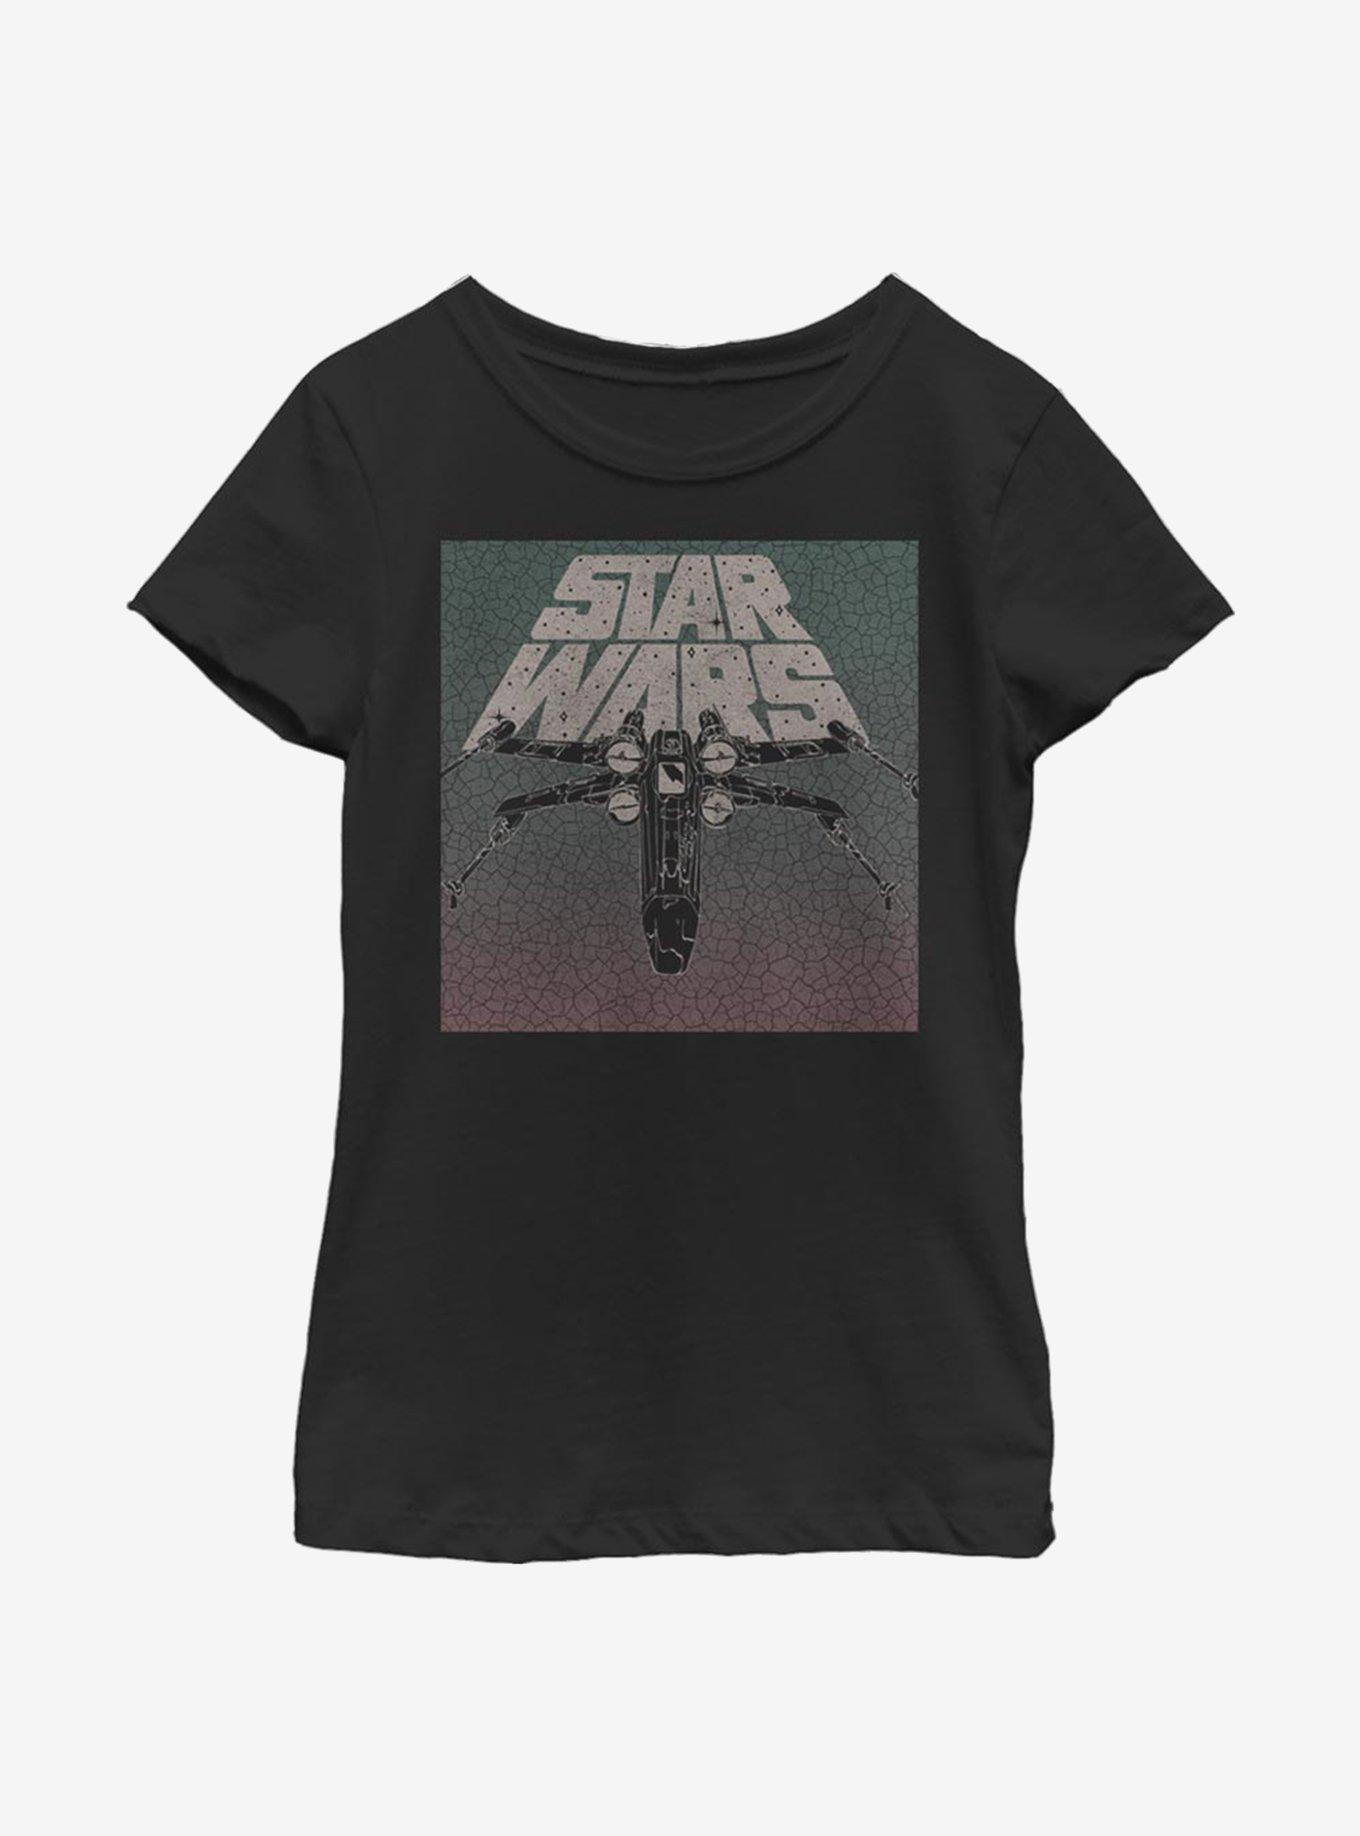 Star Wars Grunge Youth Girls T-Shirt, BLACK, hi-res